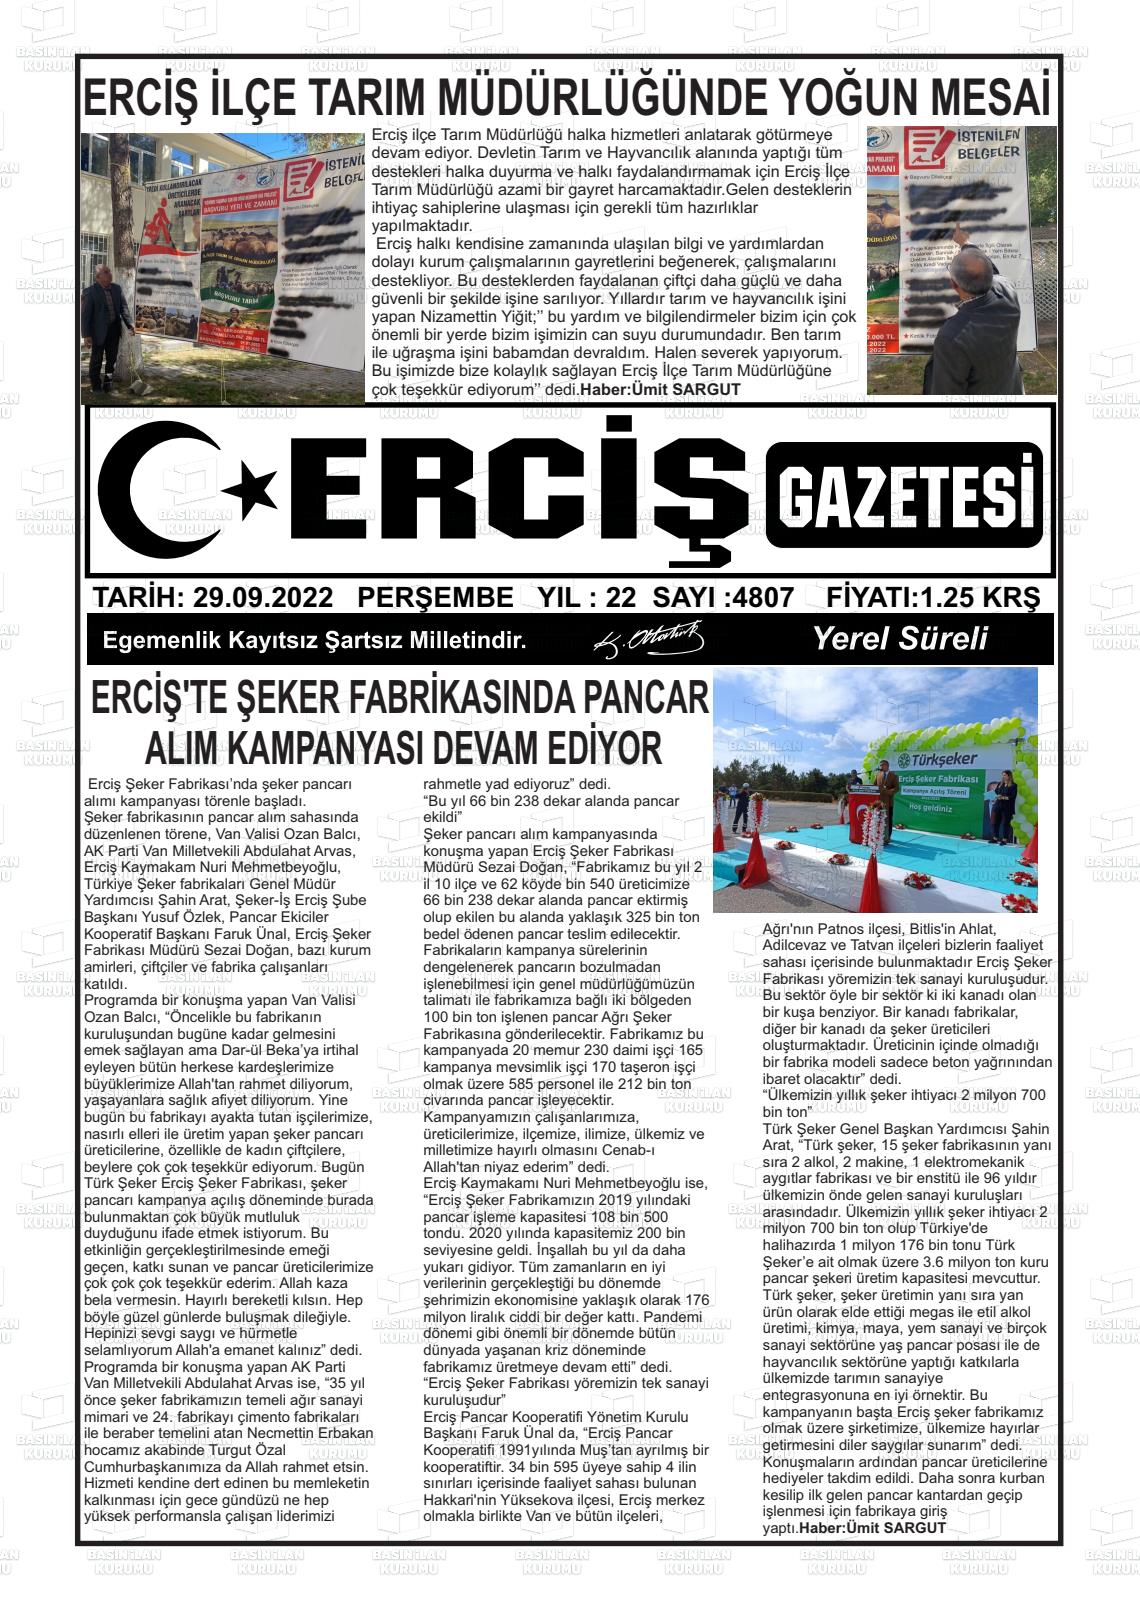 29 Eylül 2022 Erciş Gazete Manşeti